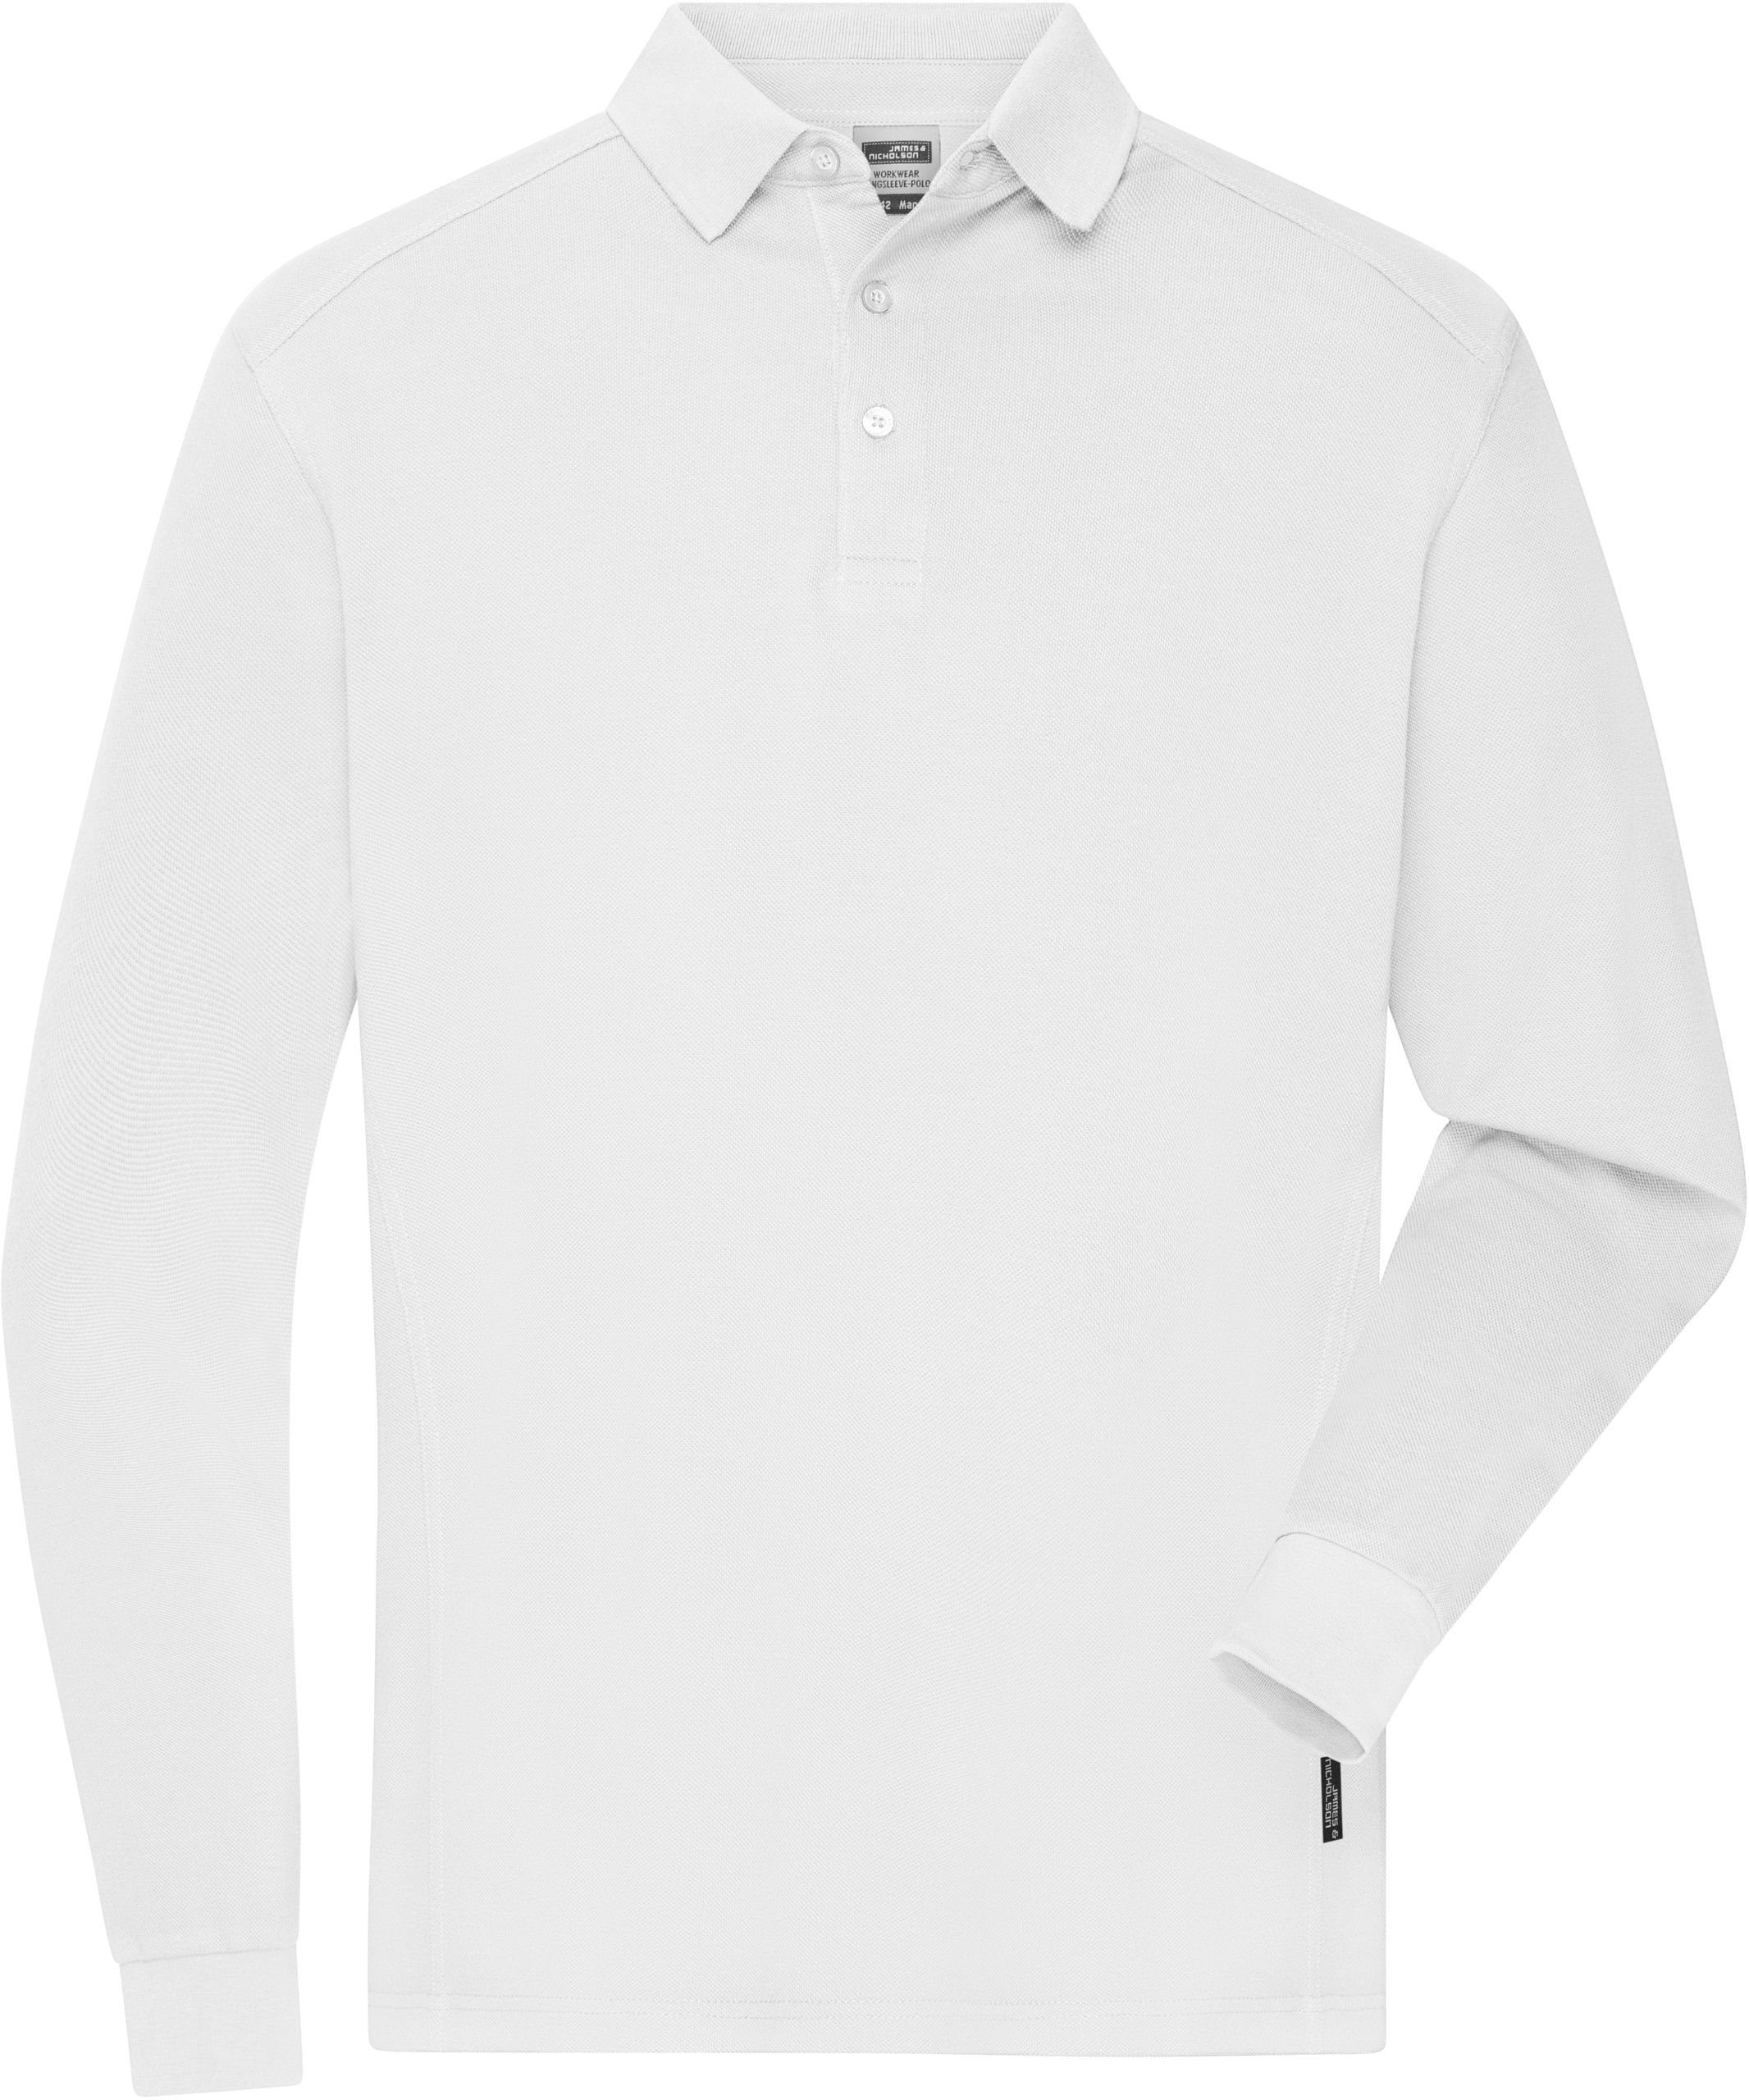 James & Nicholson Poloshirt Herren Workwear Polo langarm White